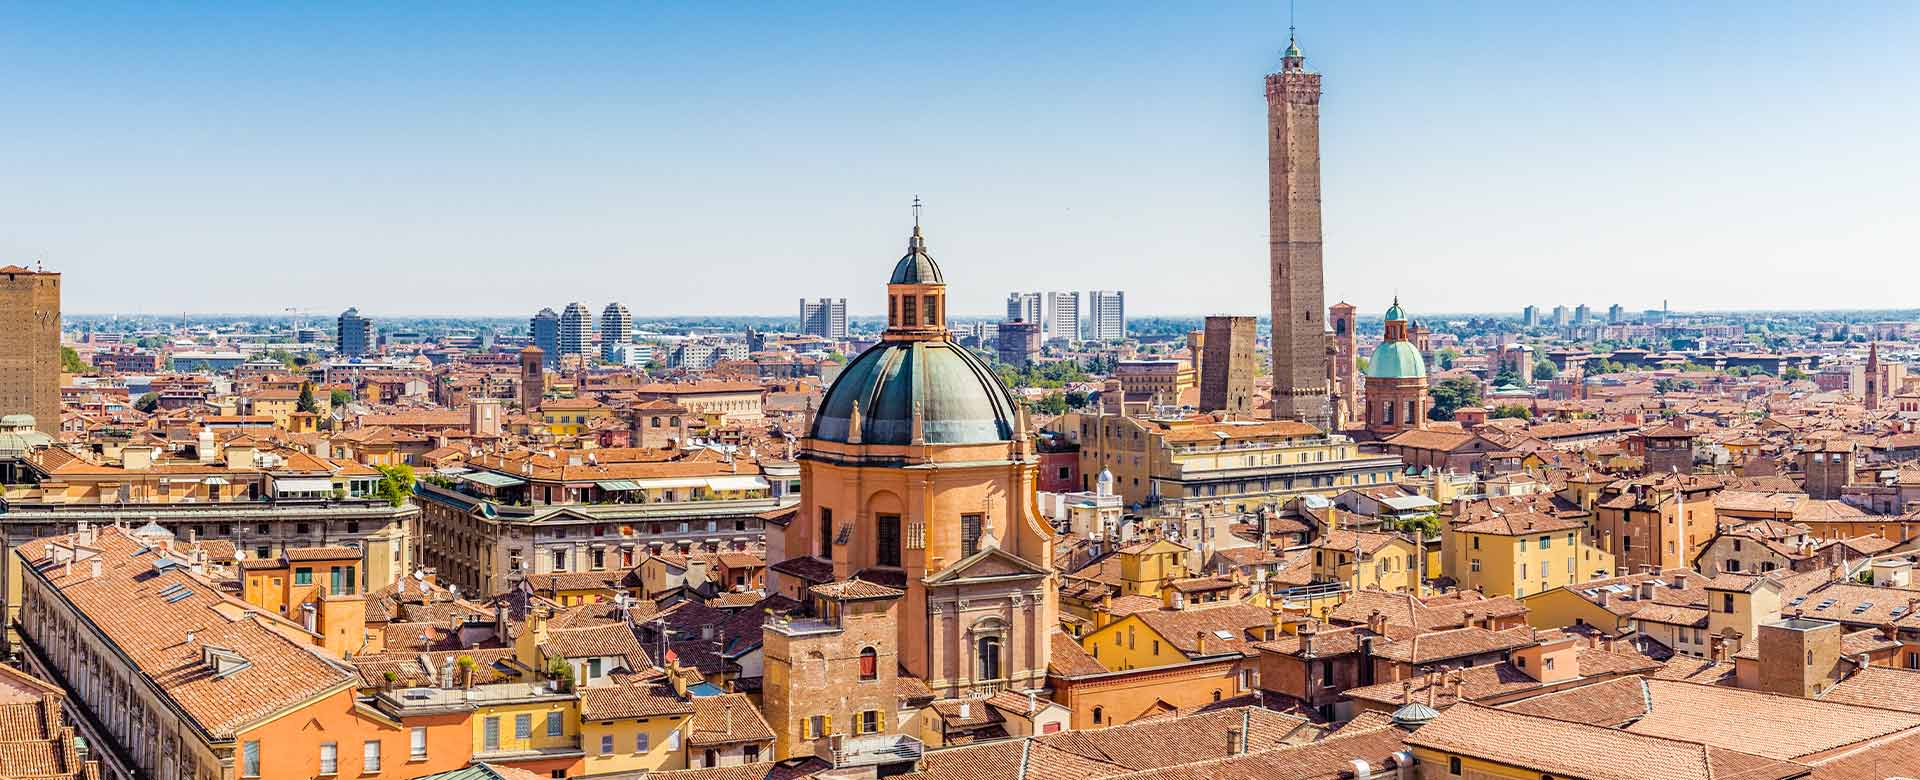 Una veduta del centro storico di Bologna